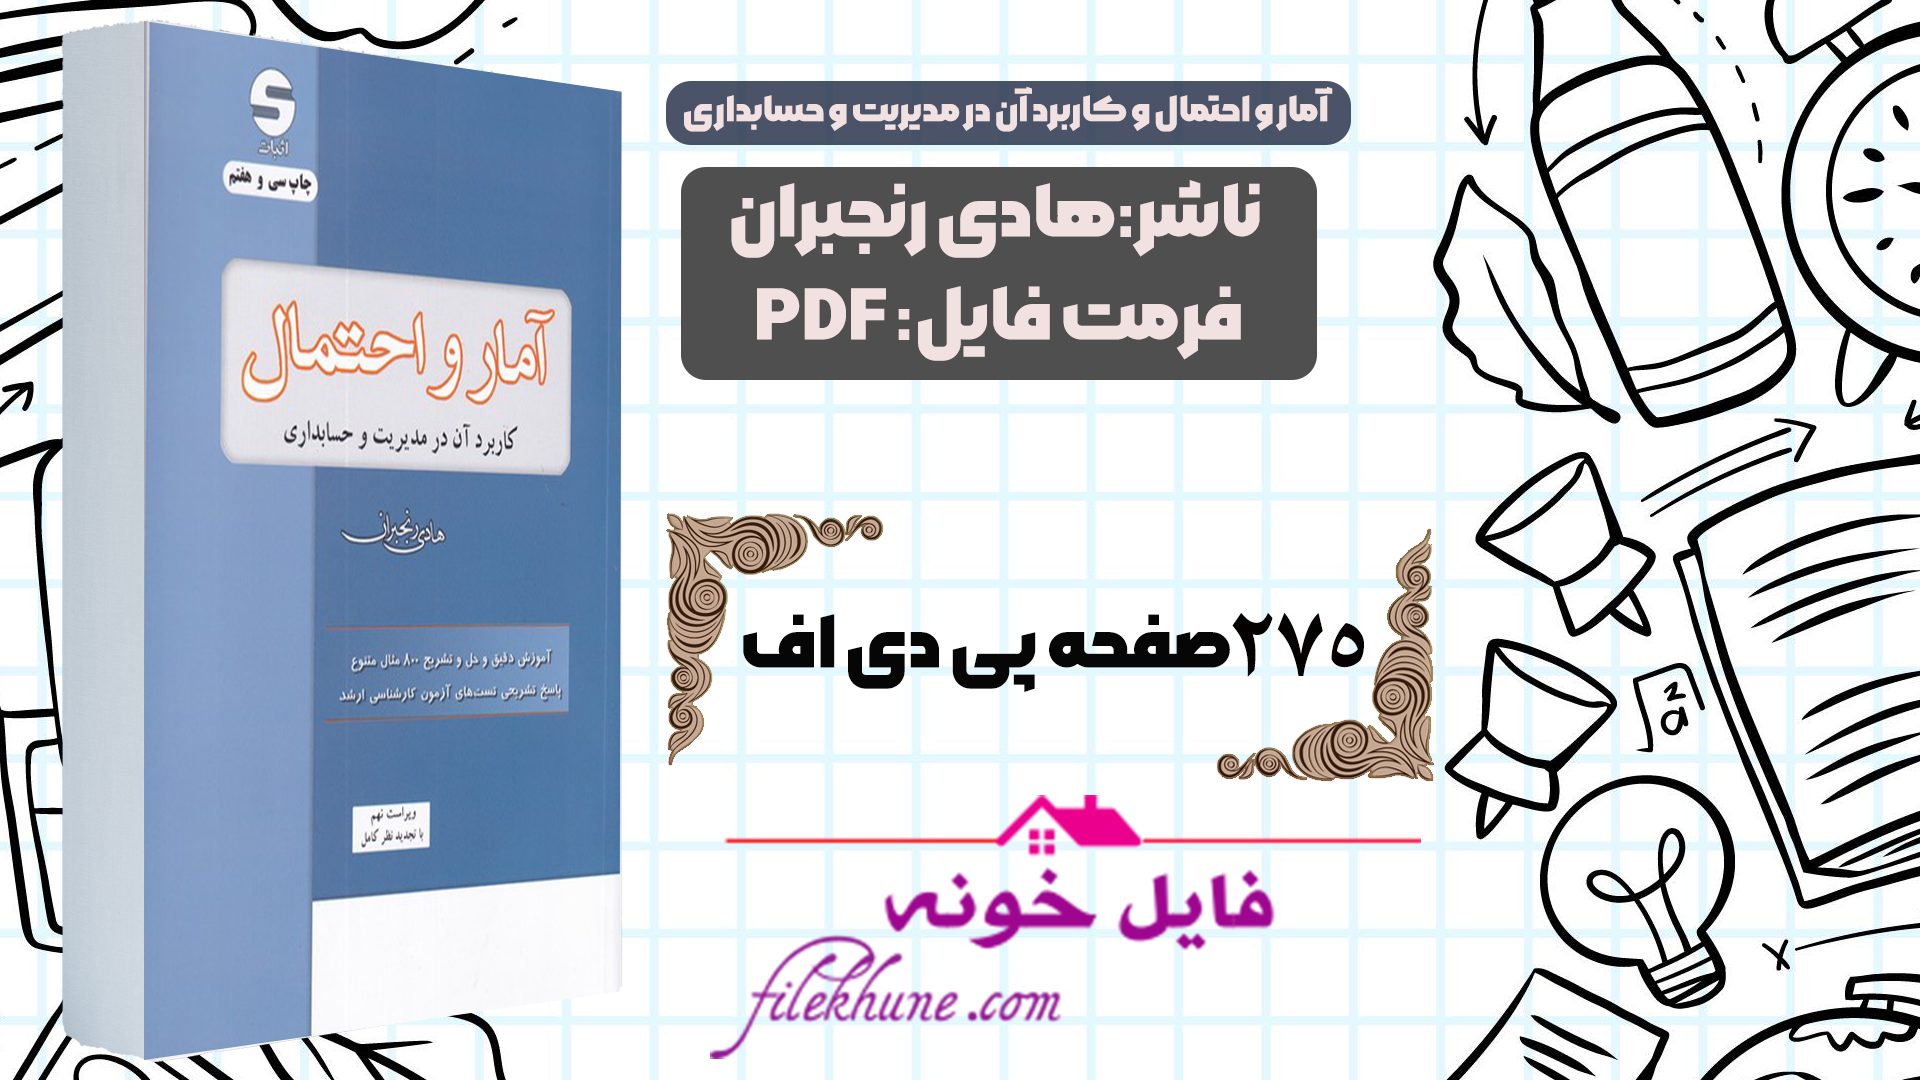 دانلود کتاب آمار و احتمال و کاربرد آن در مدیریت و حسابداری هادی رنجبران PDF - فایل خونه 